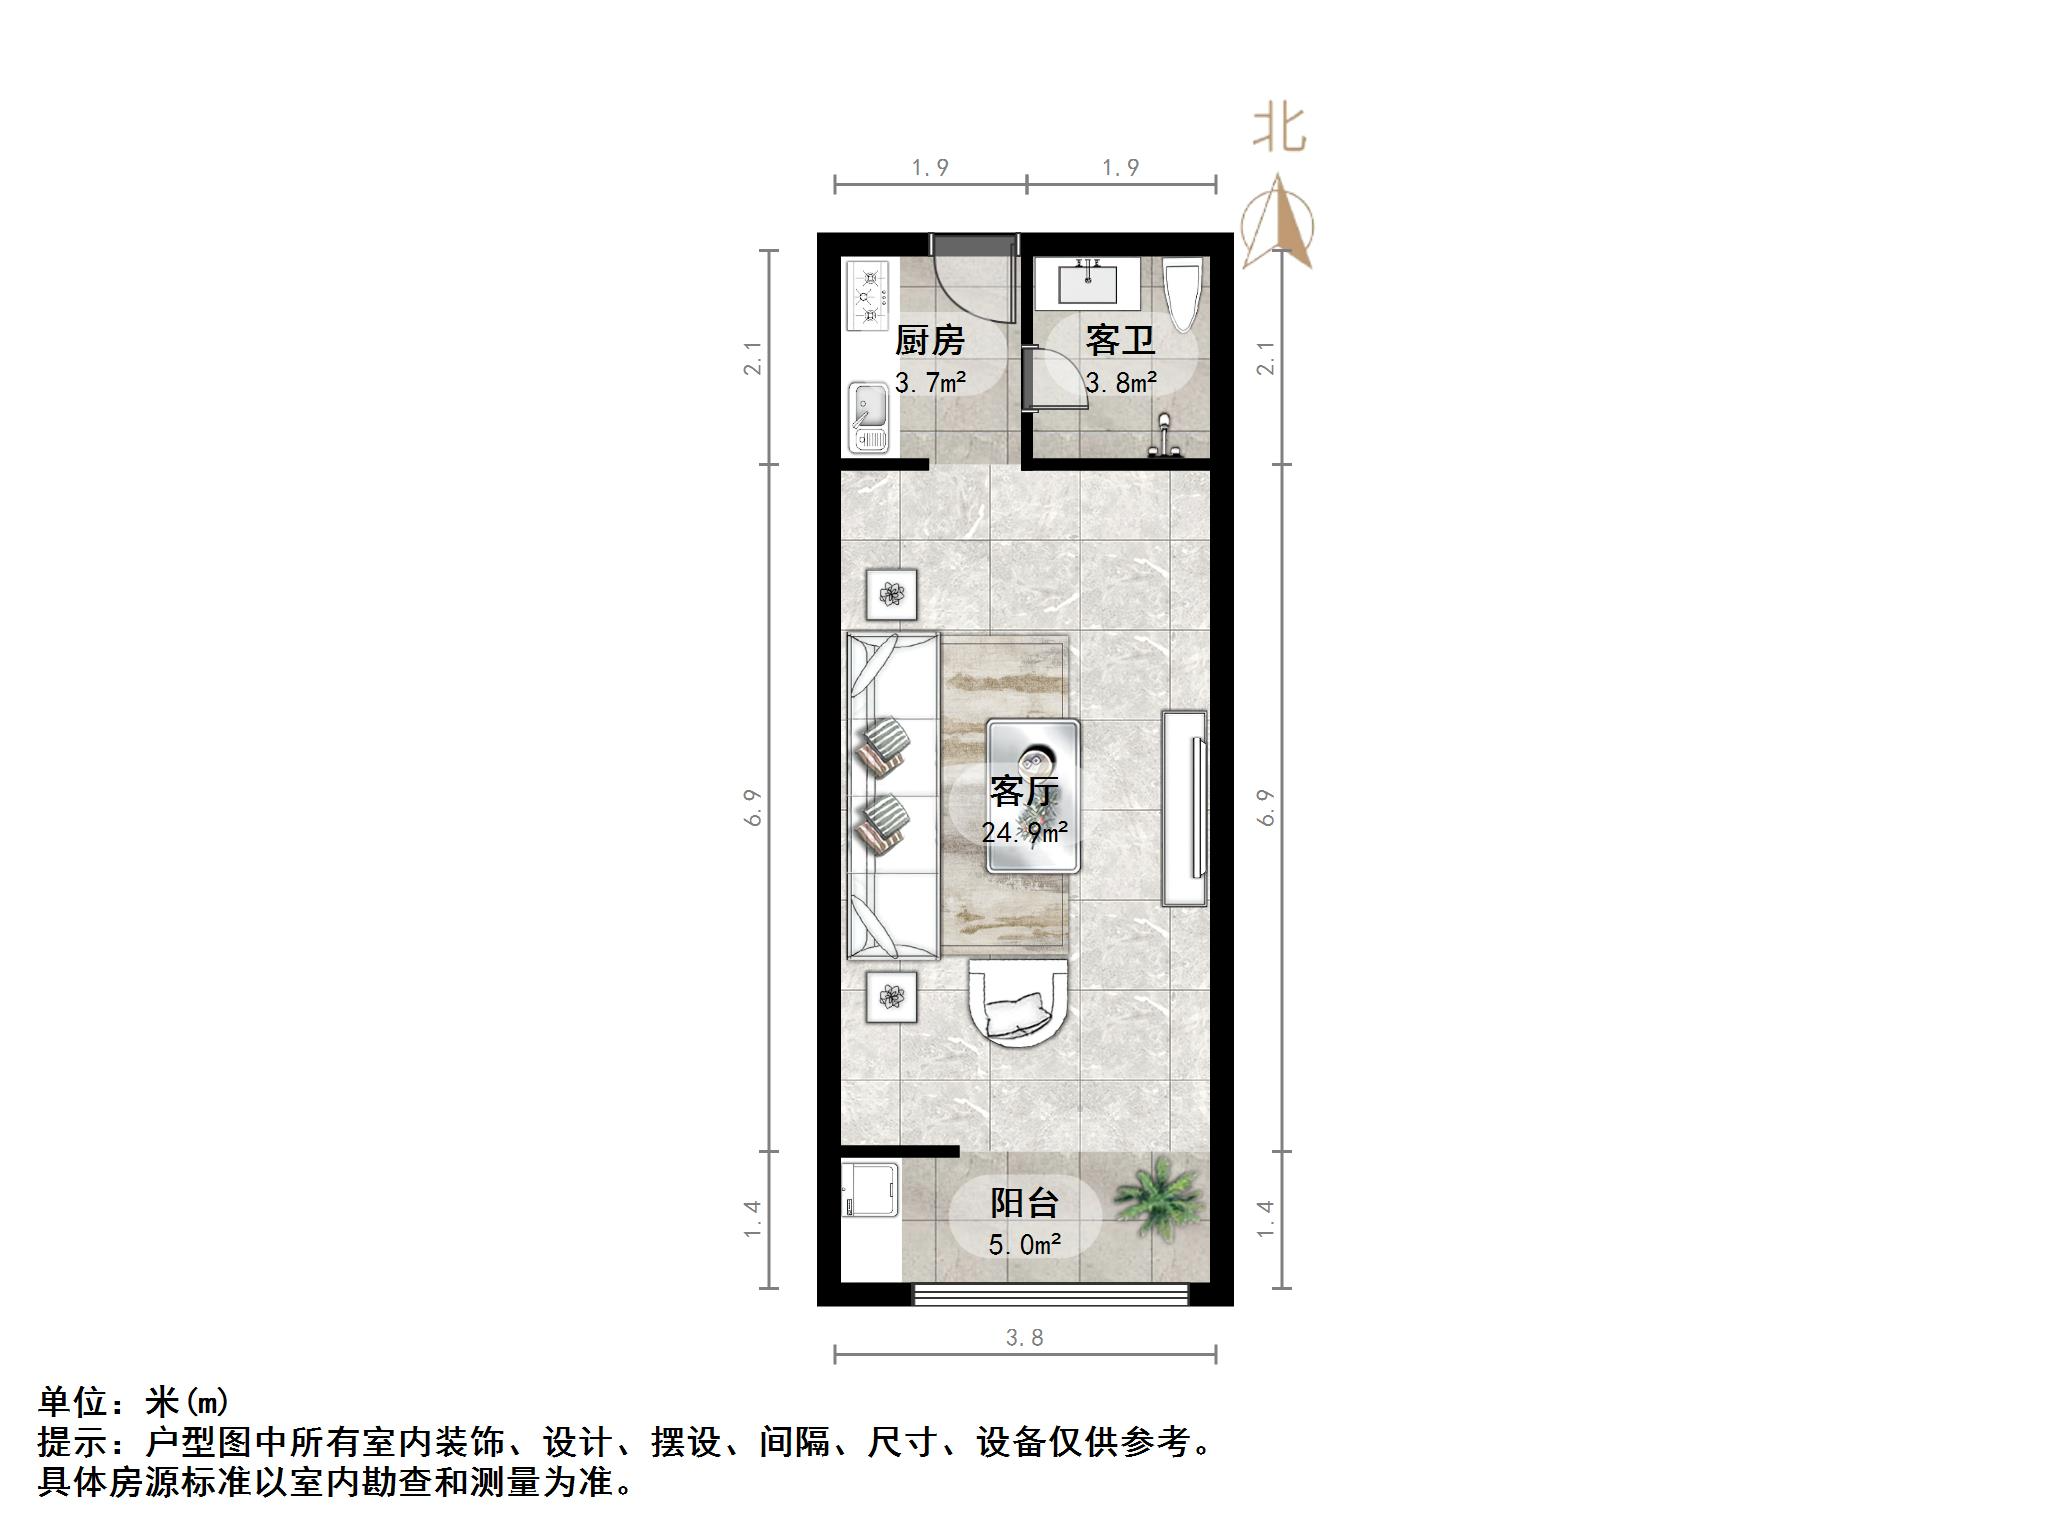 海蔚广场小区,南北,1室1厅,78万,有电梯